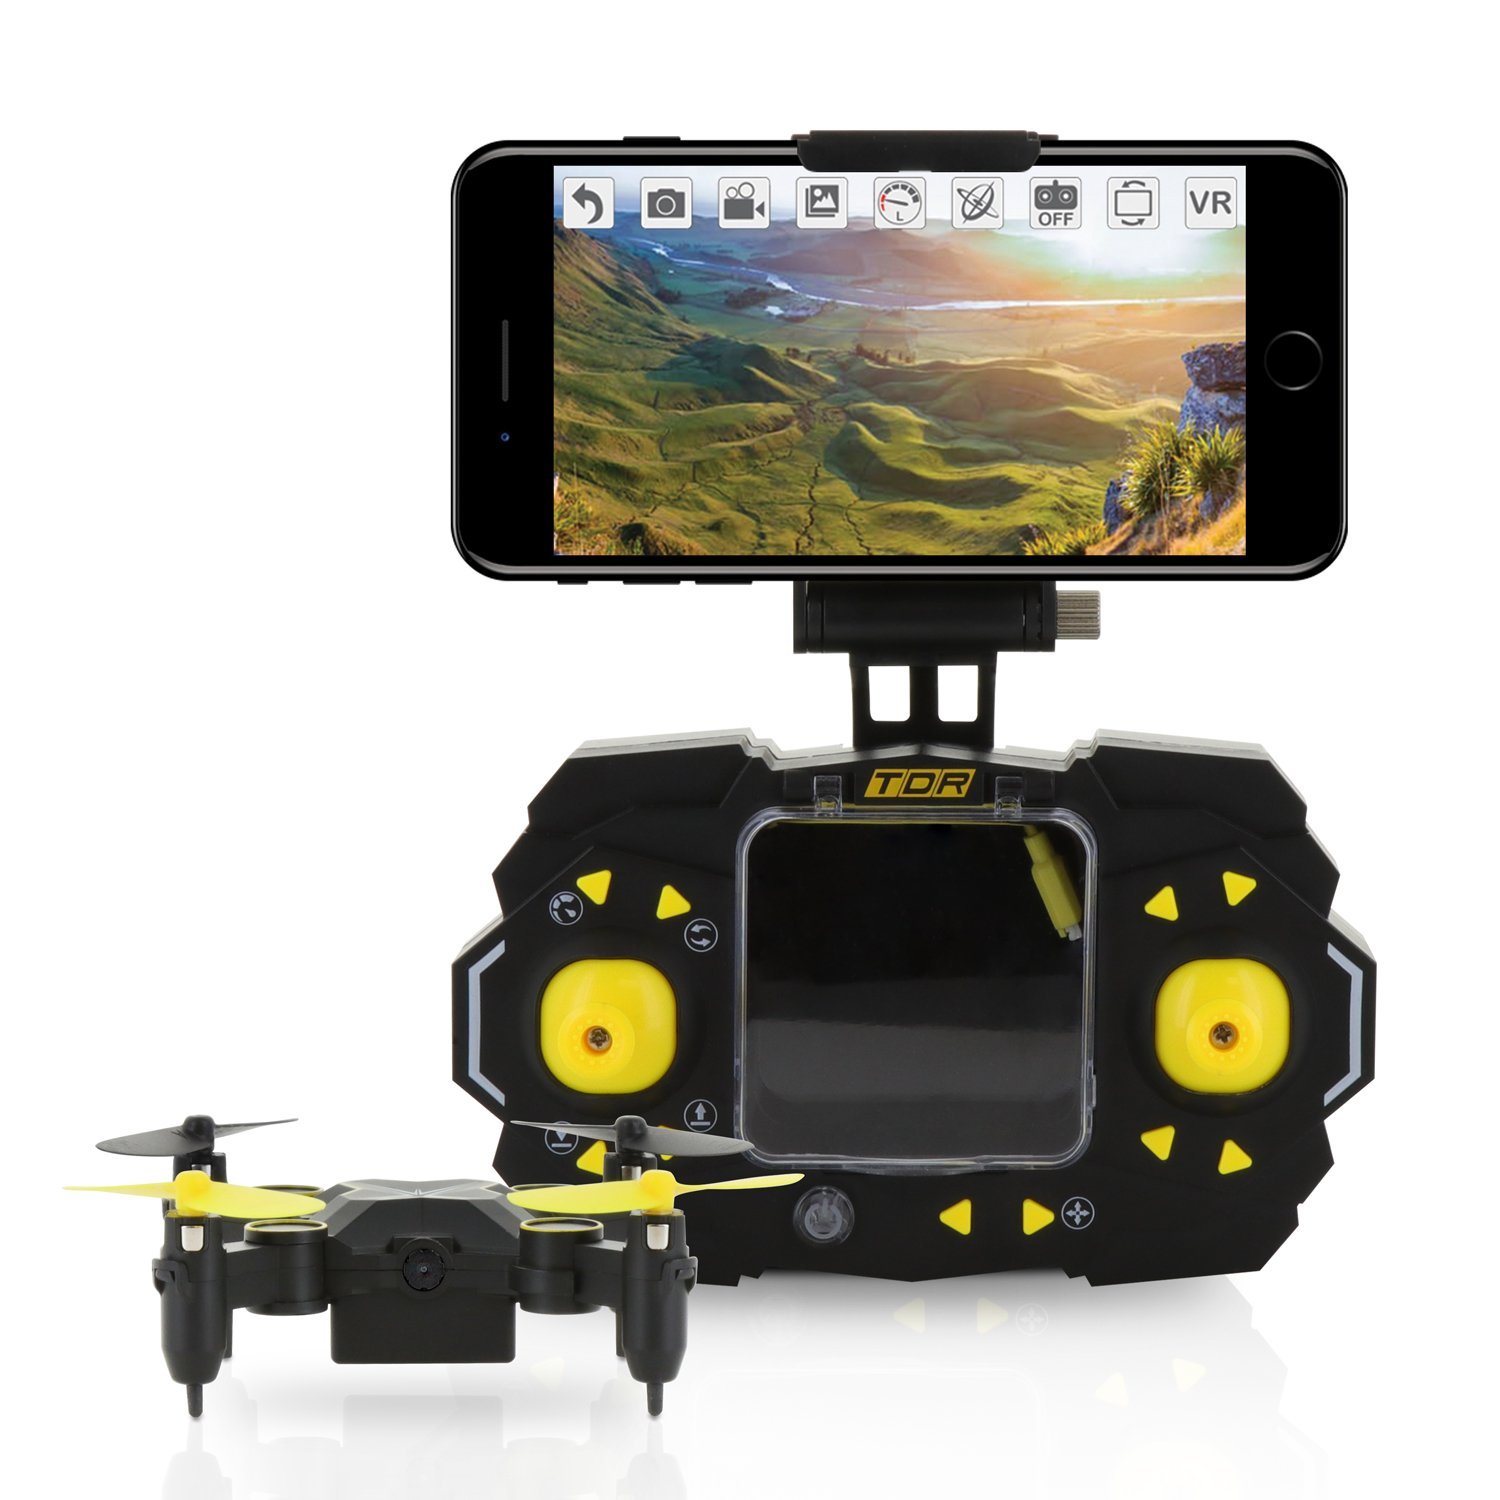 small drone camera price amazon